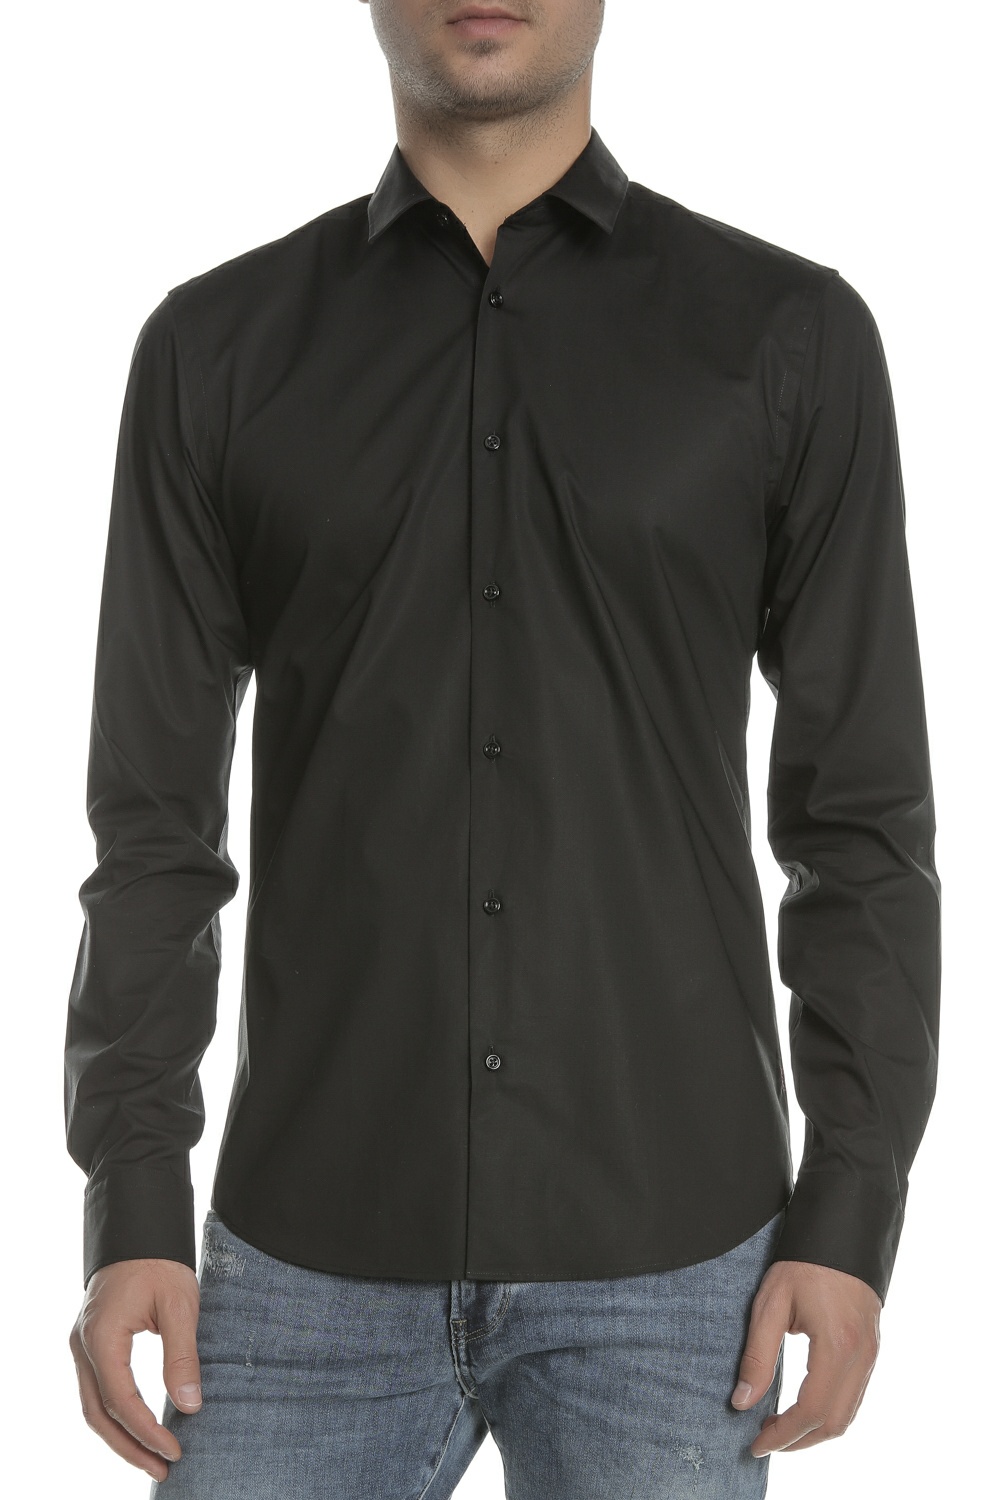 Ανδρικά/Ρούχα/Πουκάμισα/Μακρυμάνικα SCOTCH & SODA - Ανδρικό πουκάμισο SLIM FIT - Classic cotton/elas μαύρο